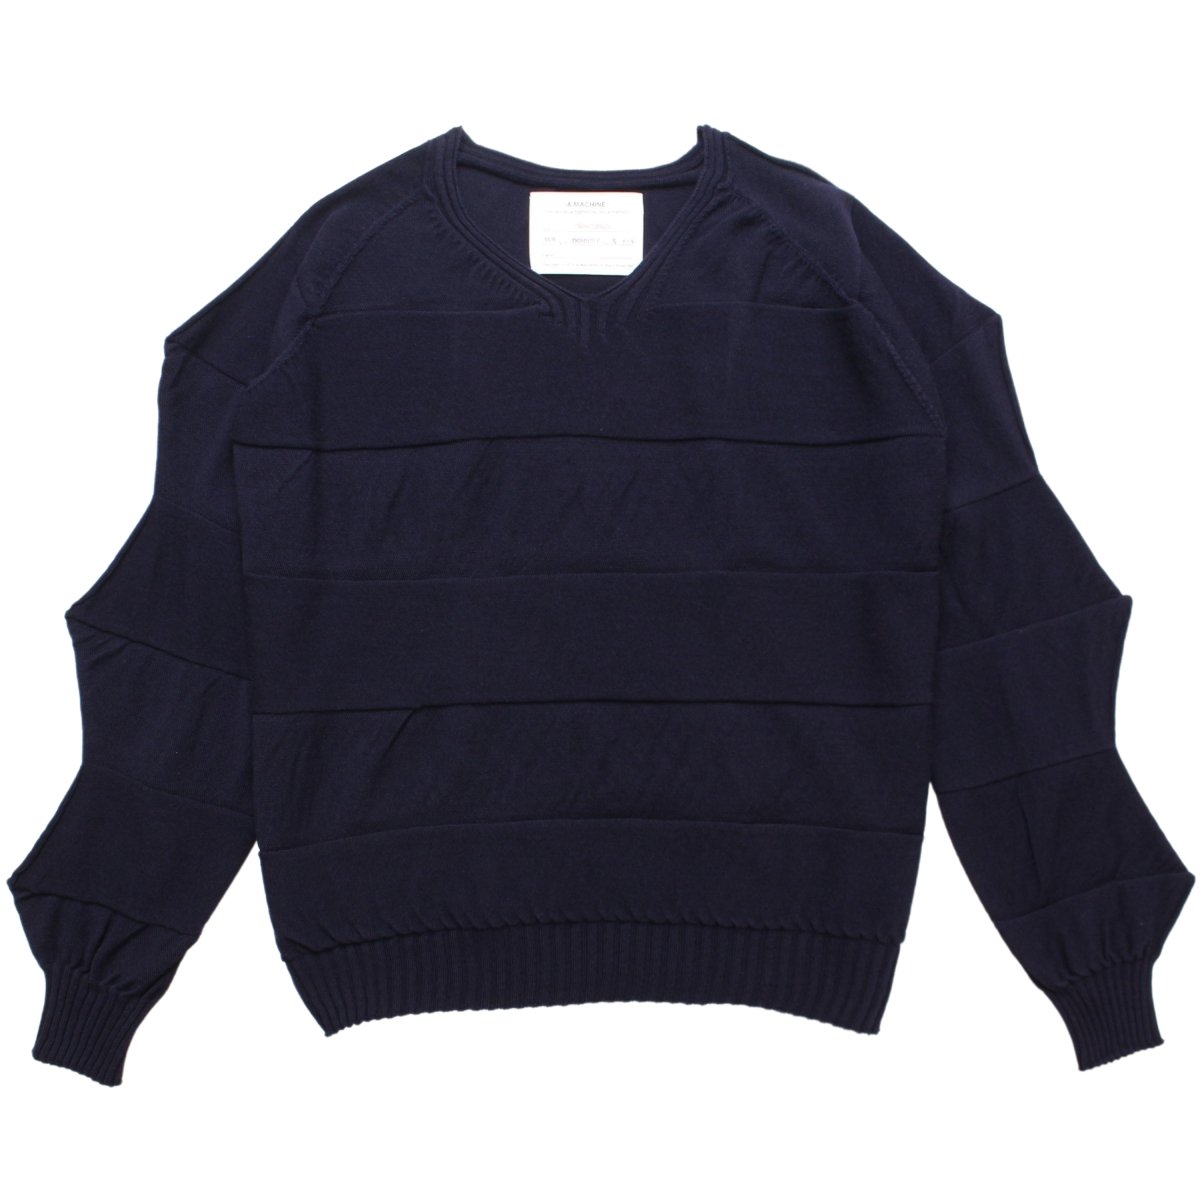 twist wool sweater【NAVY】